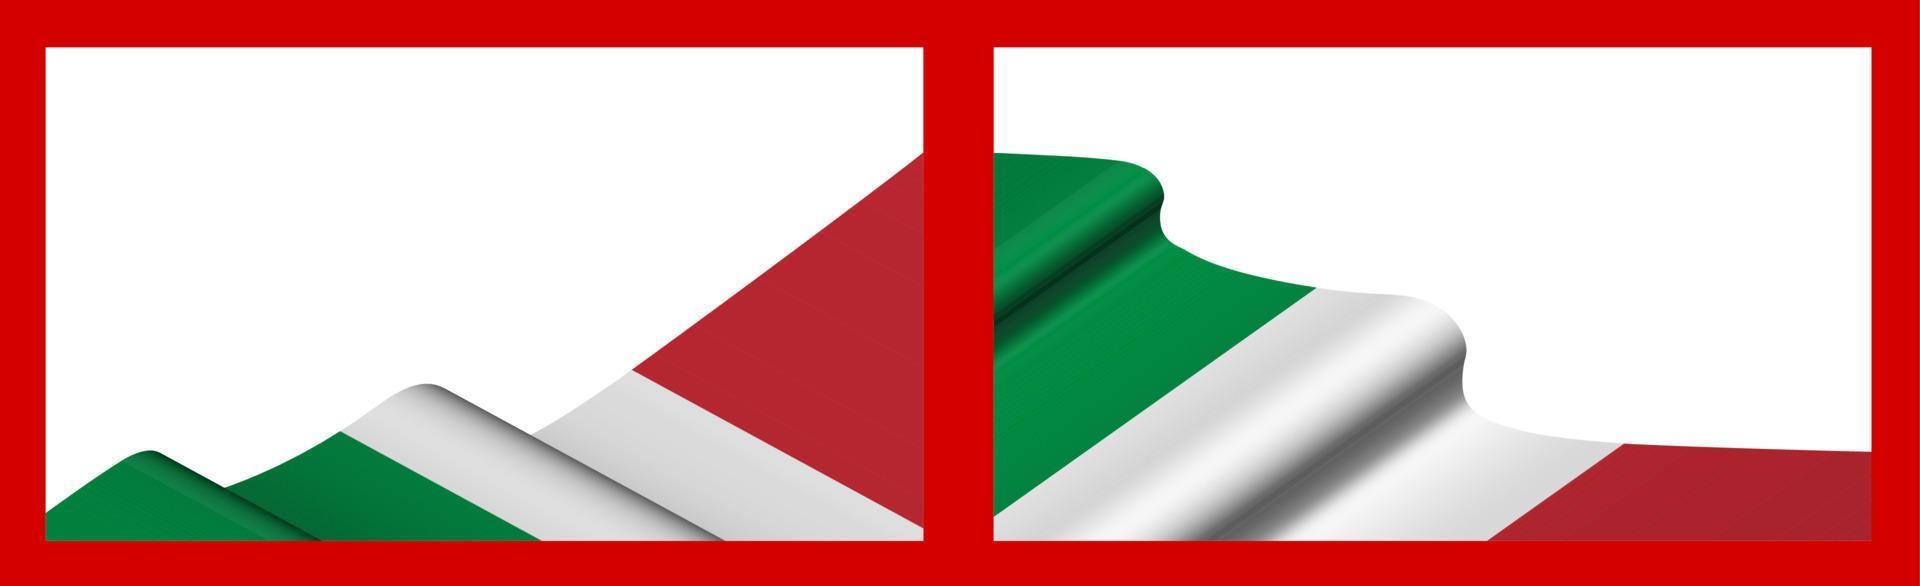 achtergrond, sjabloon voor feestelijk ontwerp. Italiaanse vlag zwaaiend in de wind. realistische vector op rode achtergrond